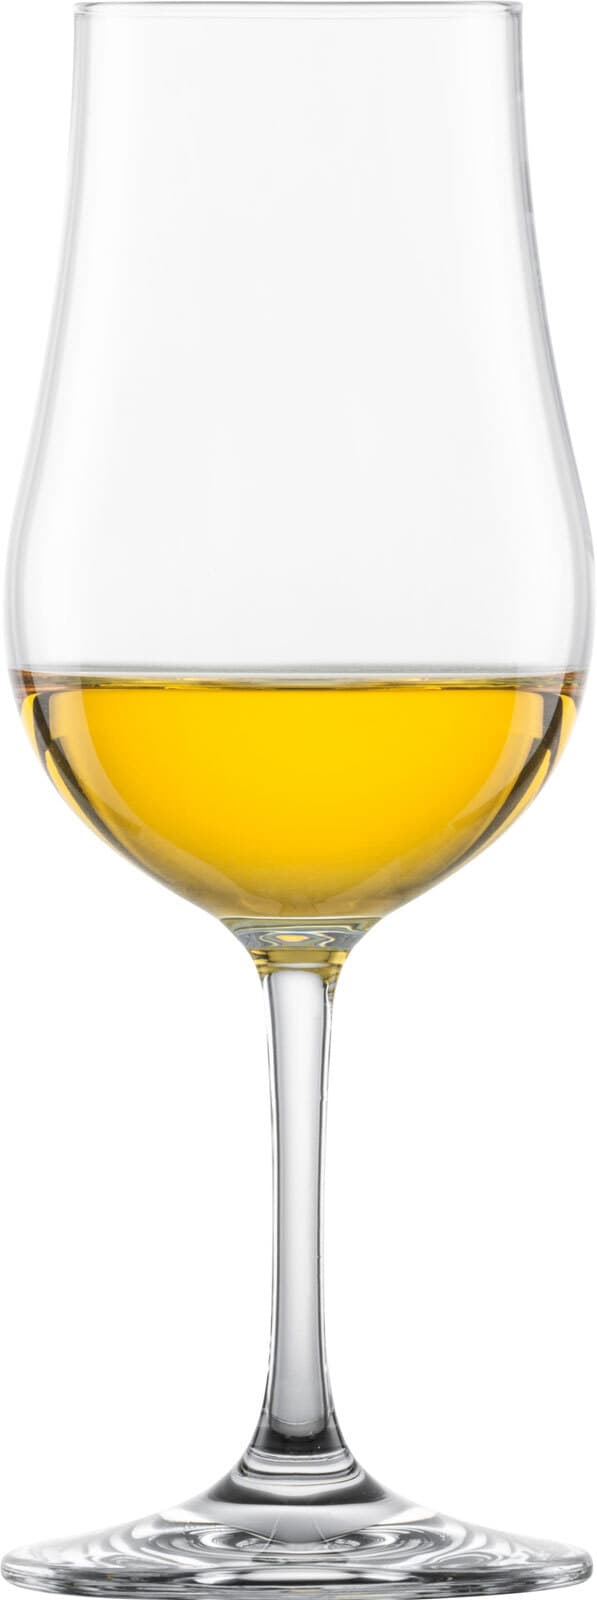 SCHOTT ZWIESEL Whiskyglas BAR SPEZIAL 4er Set - je 218 ml